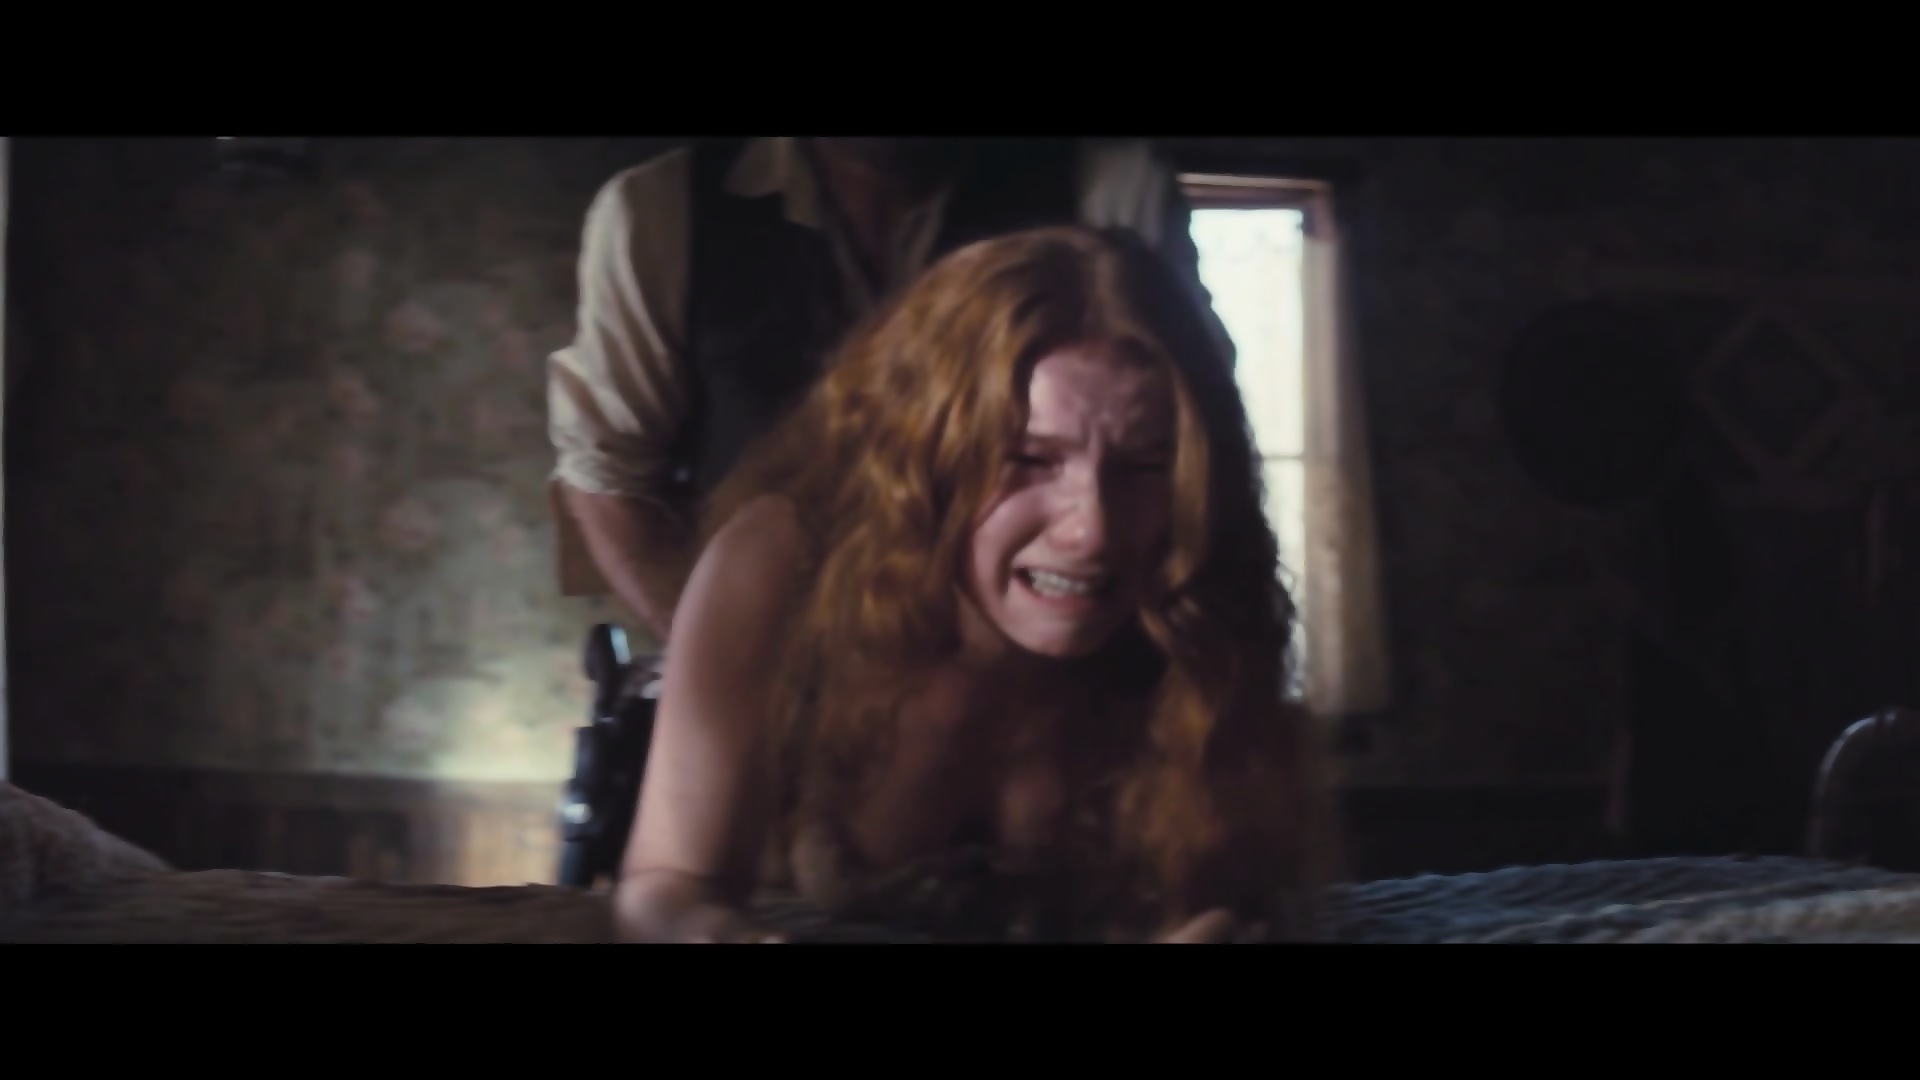 Redheaded girl in sex movie scenes